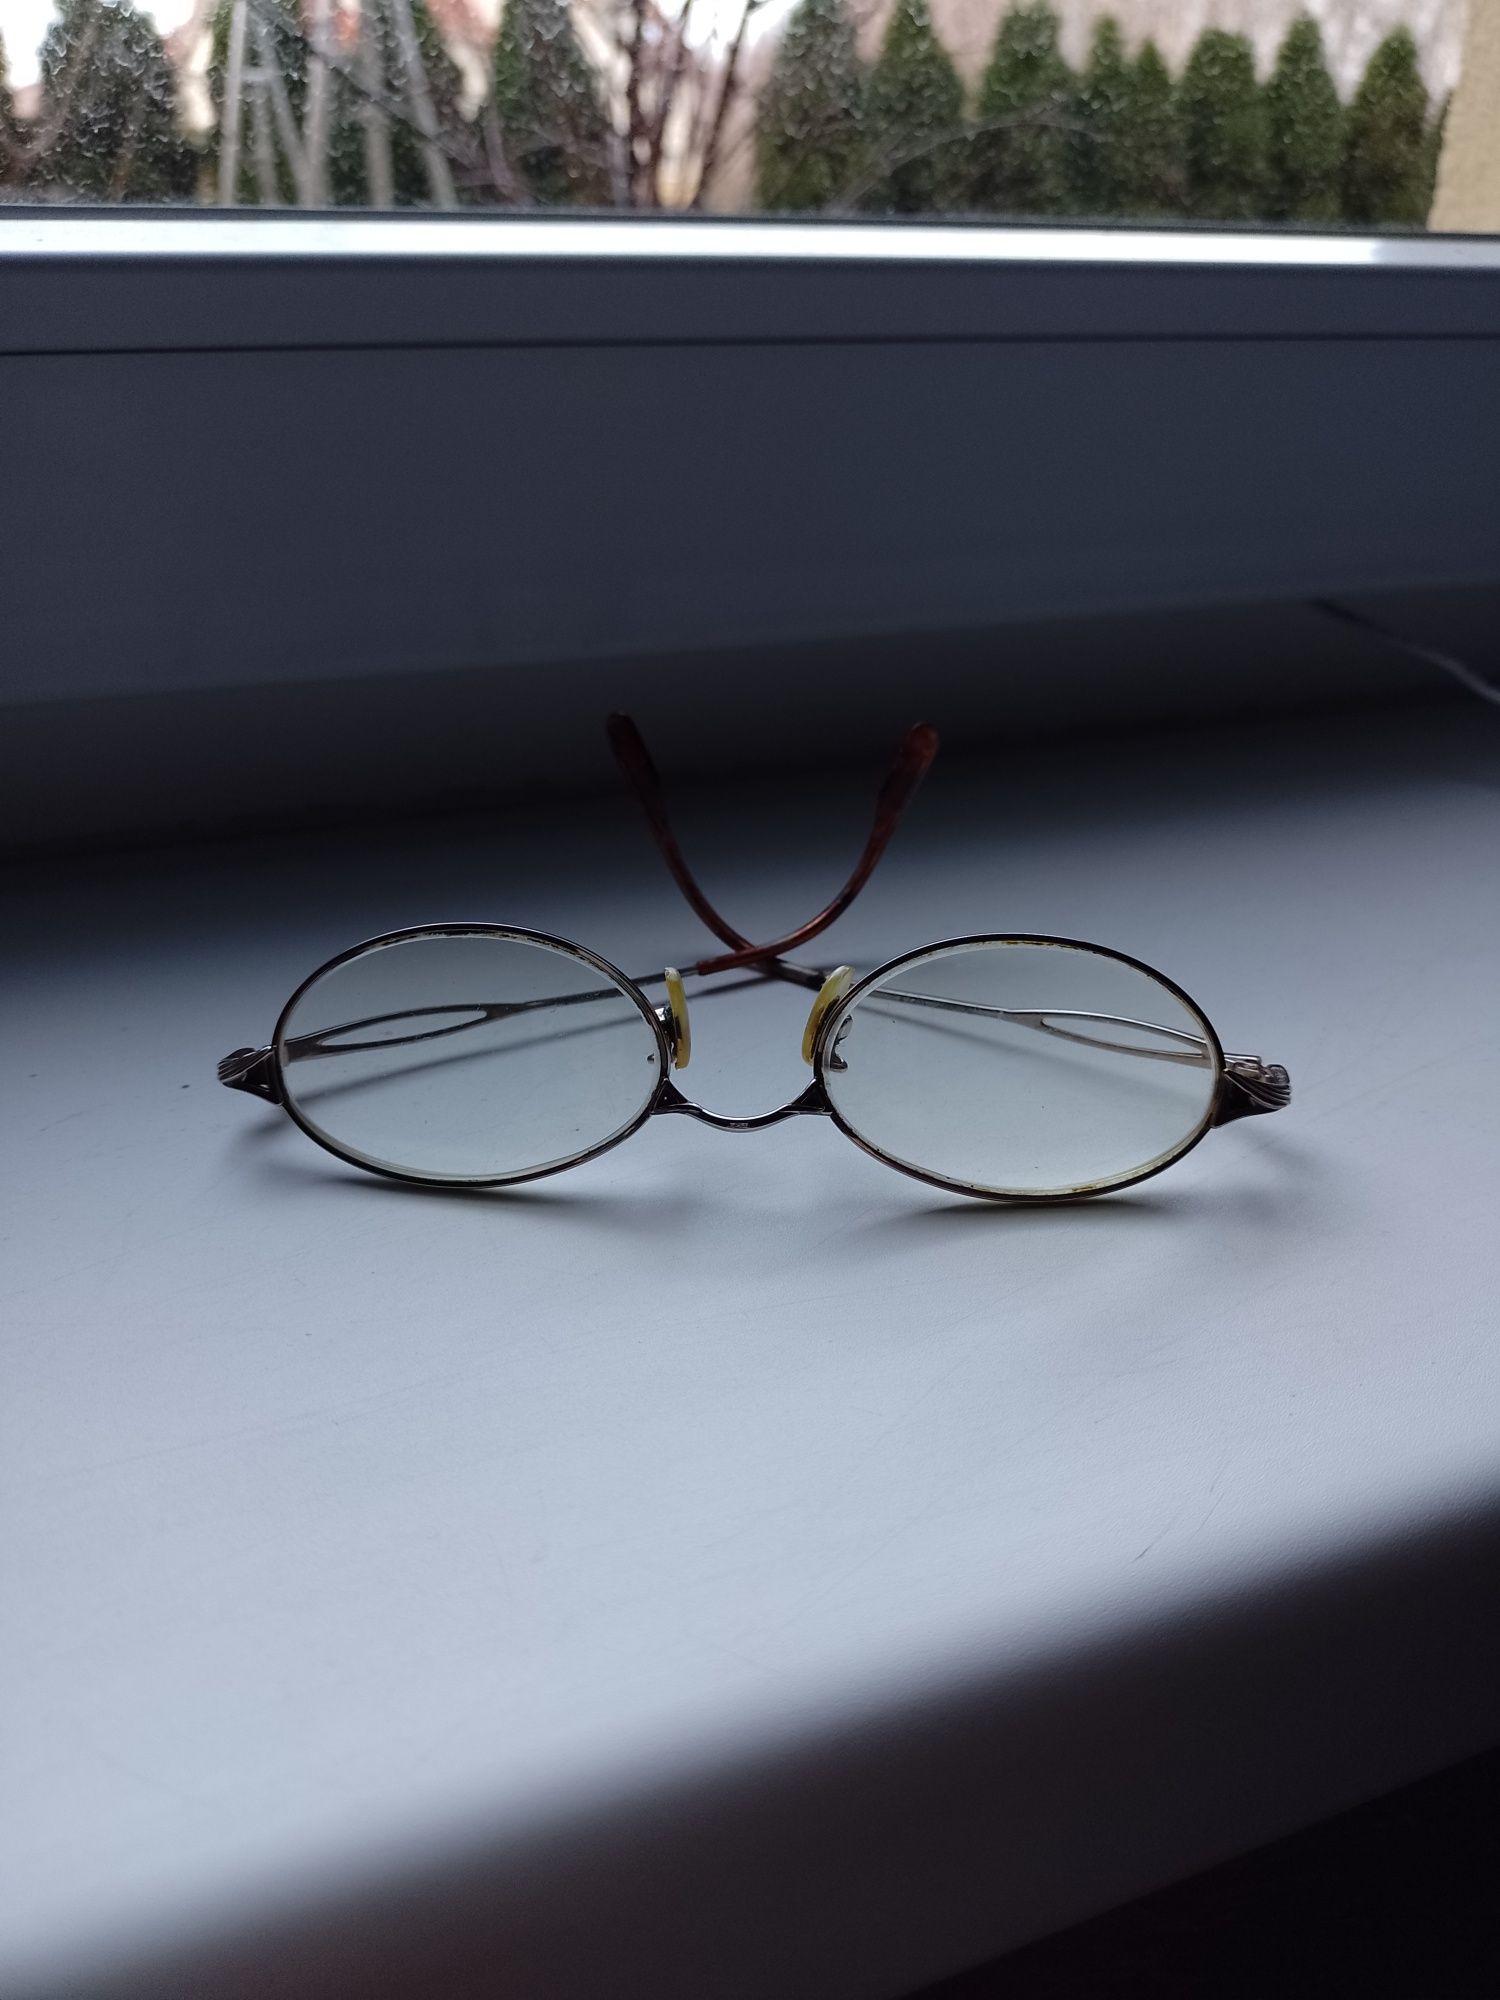 Złote oprawki milenijne okulary lata 2000